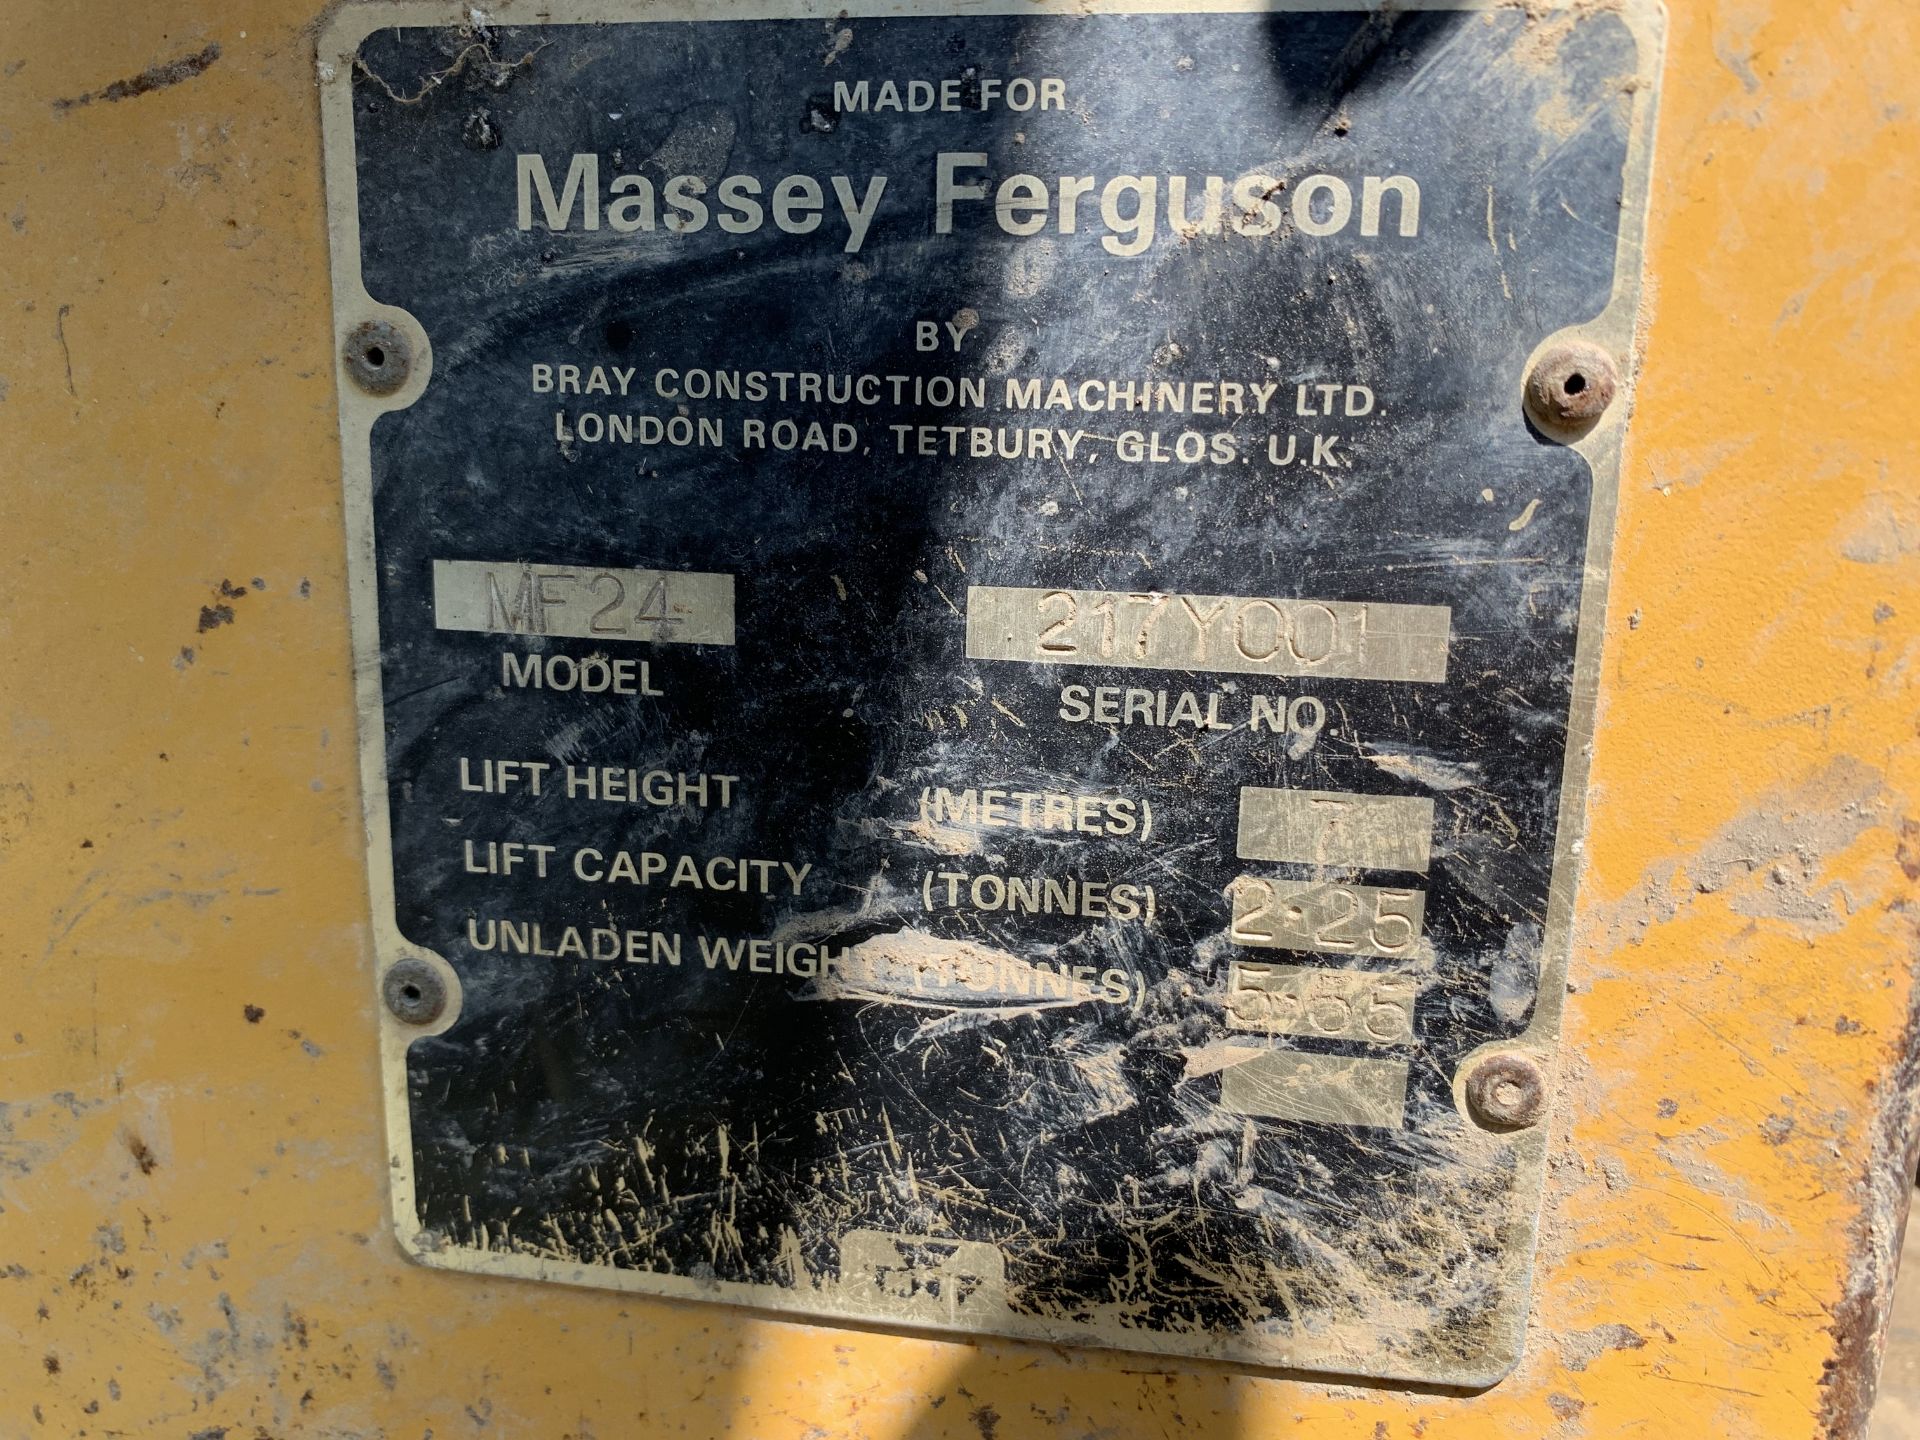 Massey Ferguson 24 telehandler, C667 OEG, 5842 hours, with grain bucket - Image 3 of 5